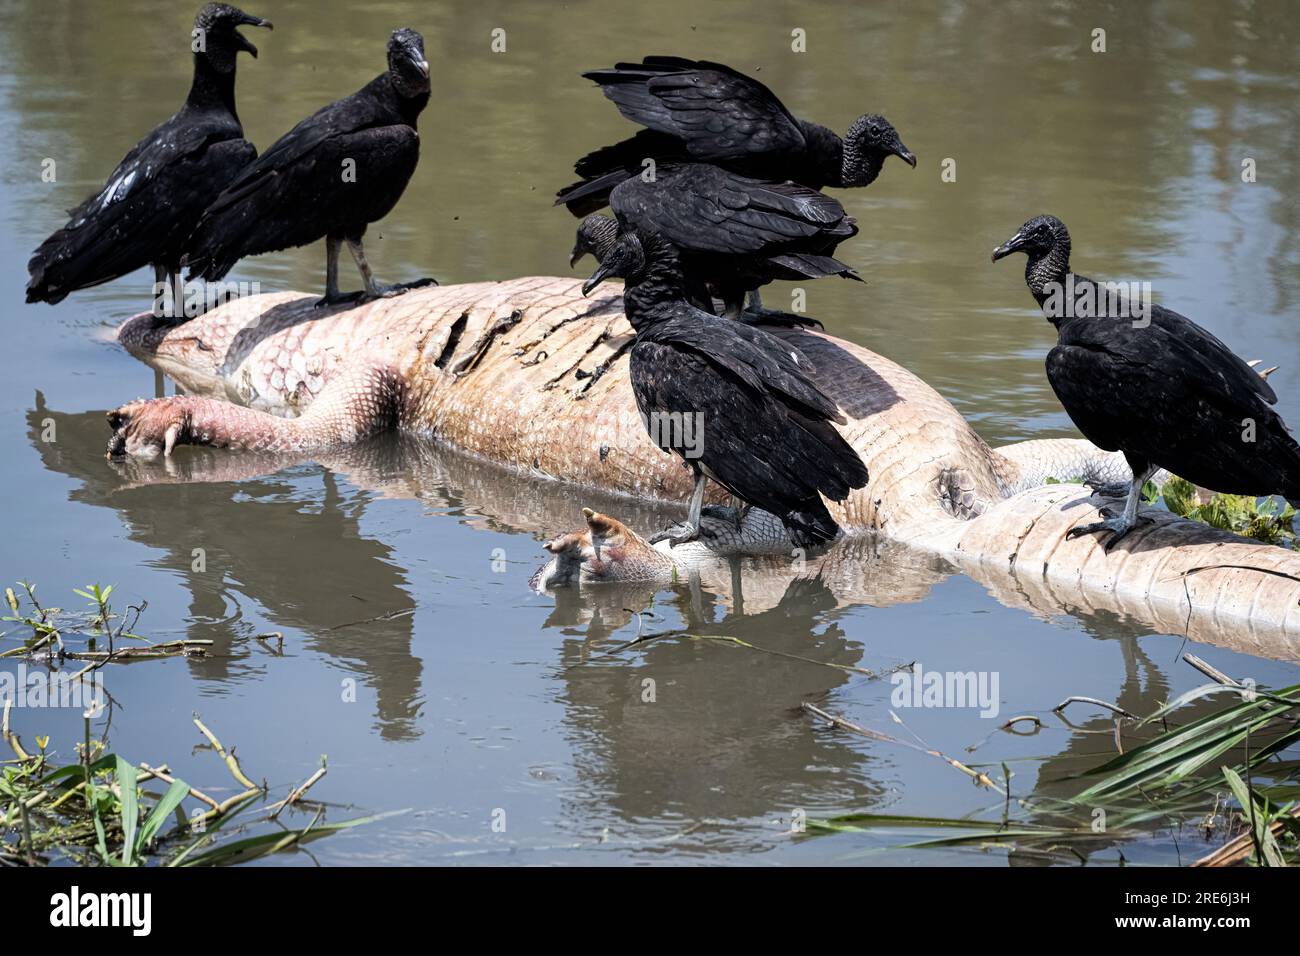 Das ist der Kreislauf des Lebens. Wir wissen nicht, was den Aligator getötet hat, aber der Tod füttert die Vögel und wahrscheinlich ihre Jungen. Es ist nicht hübsch, es ist Stockfoto